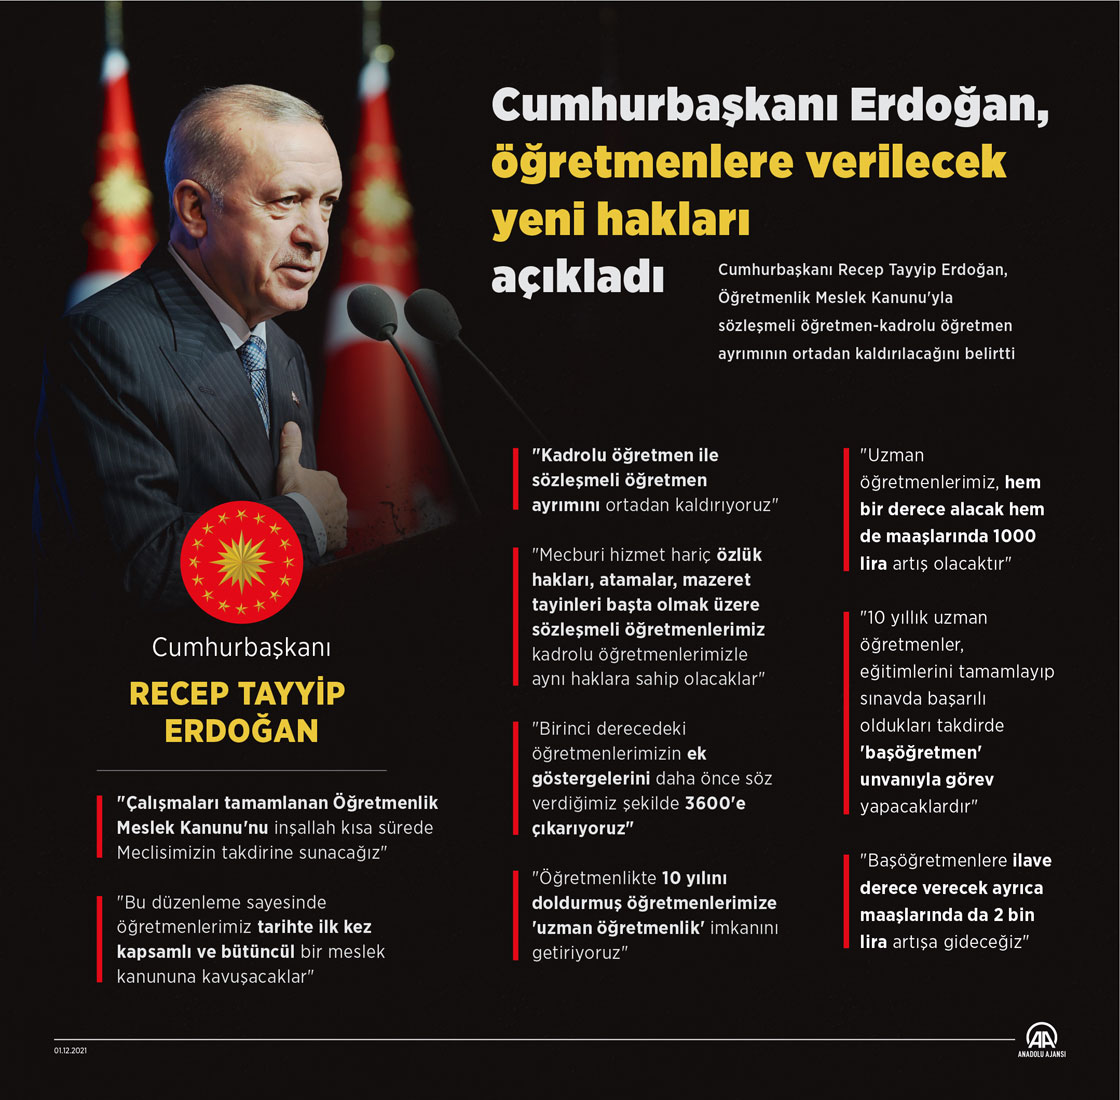 Cumhurbaşkanı Erdoğan, Öğretmenlik Meslek Kanunu'nun detaylarını açıkladı